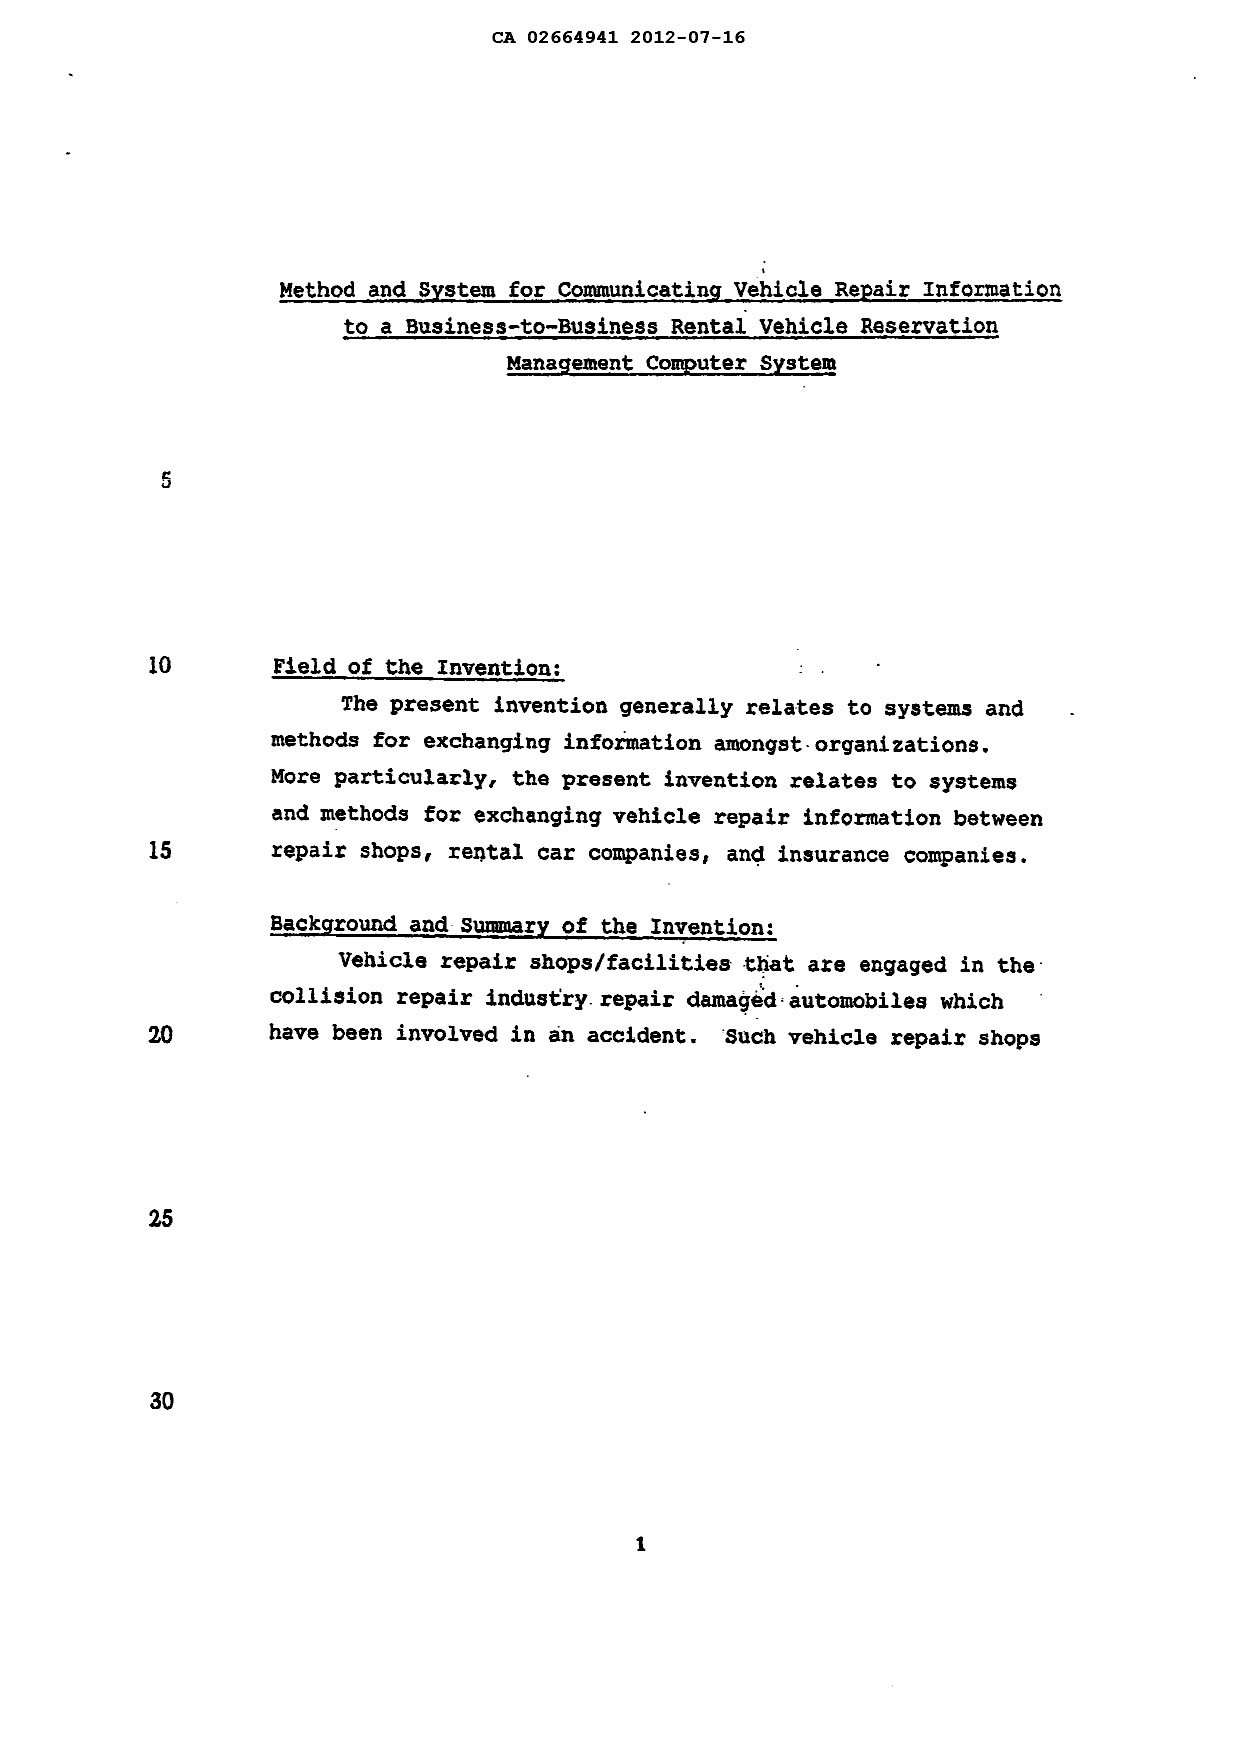 Canadian Patent Document 2664941. Description 20120716. Image 1 of 40